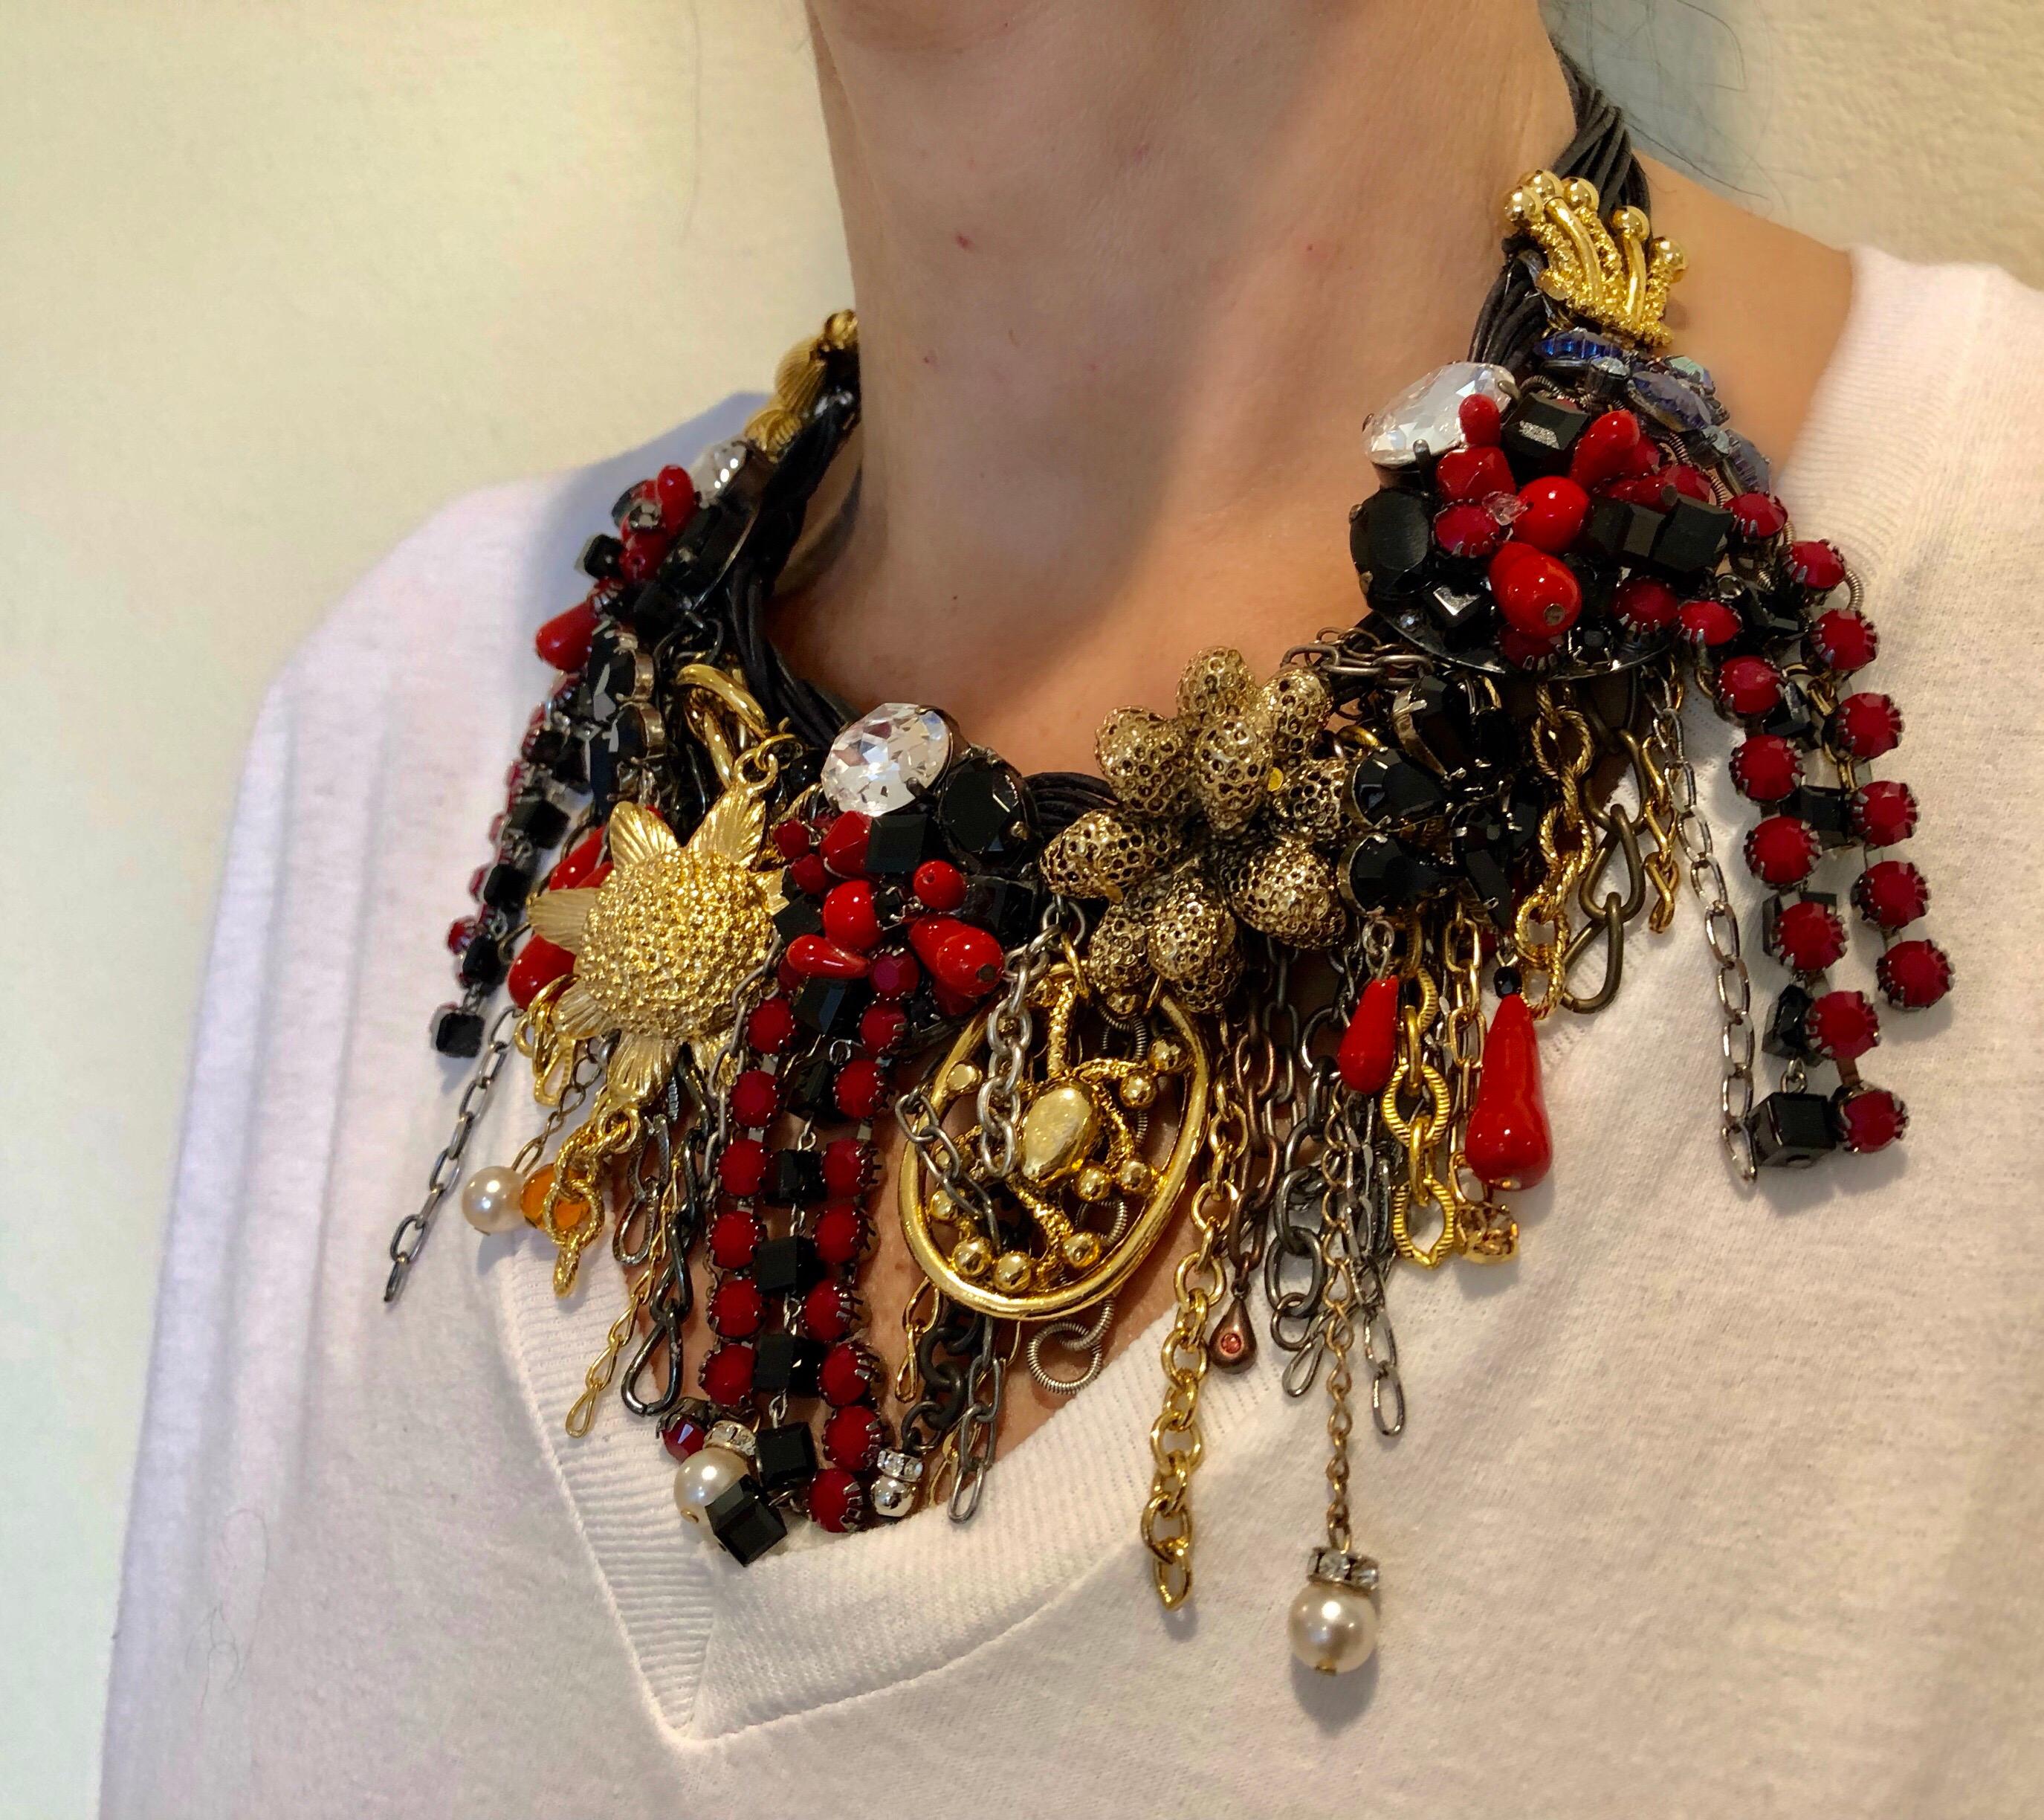 Zeitgenössische Statement-Halskette mit Fransen aus Metall und Leder „Collier“ Damen